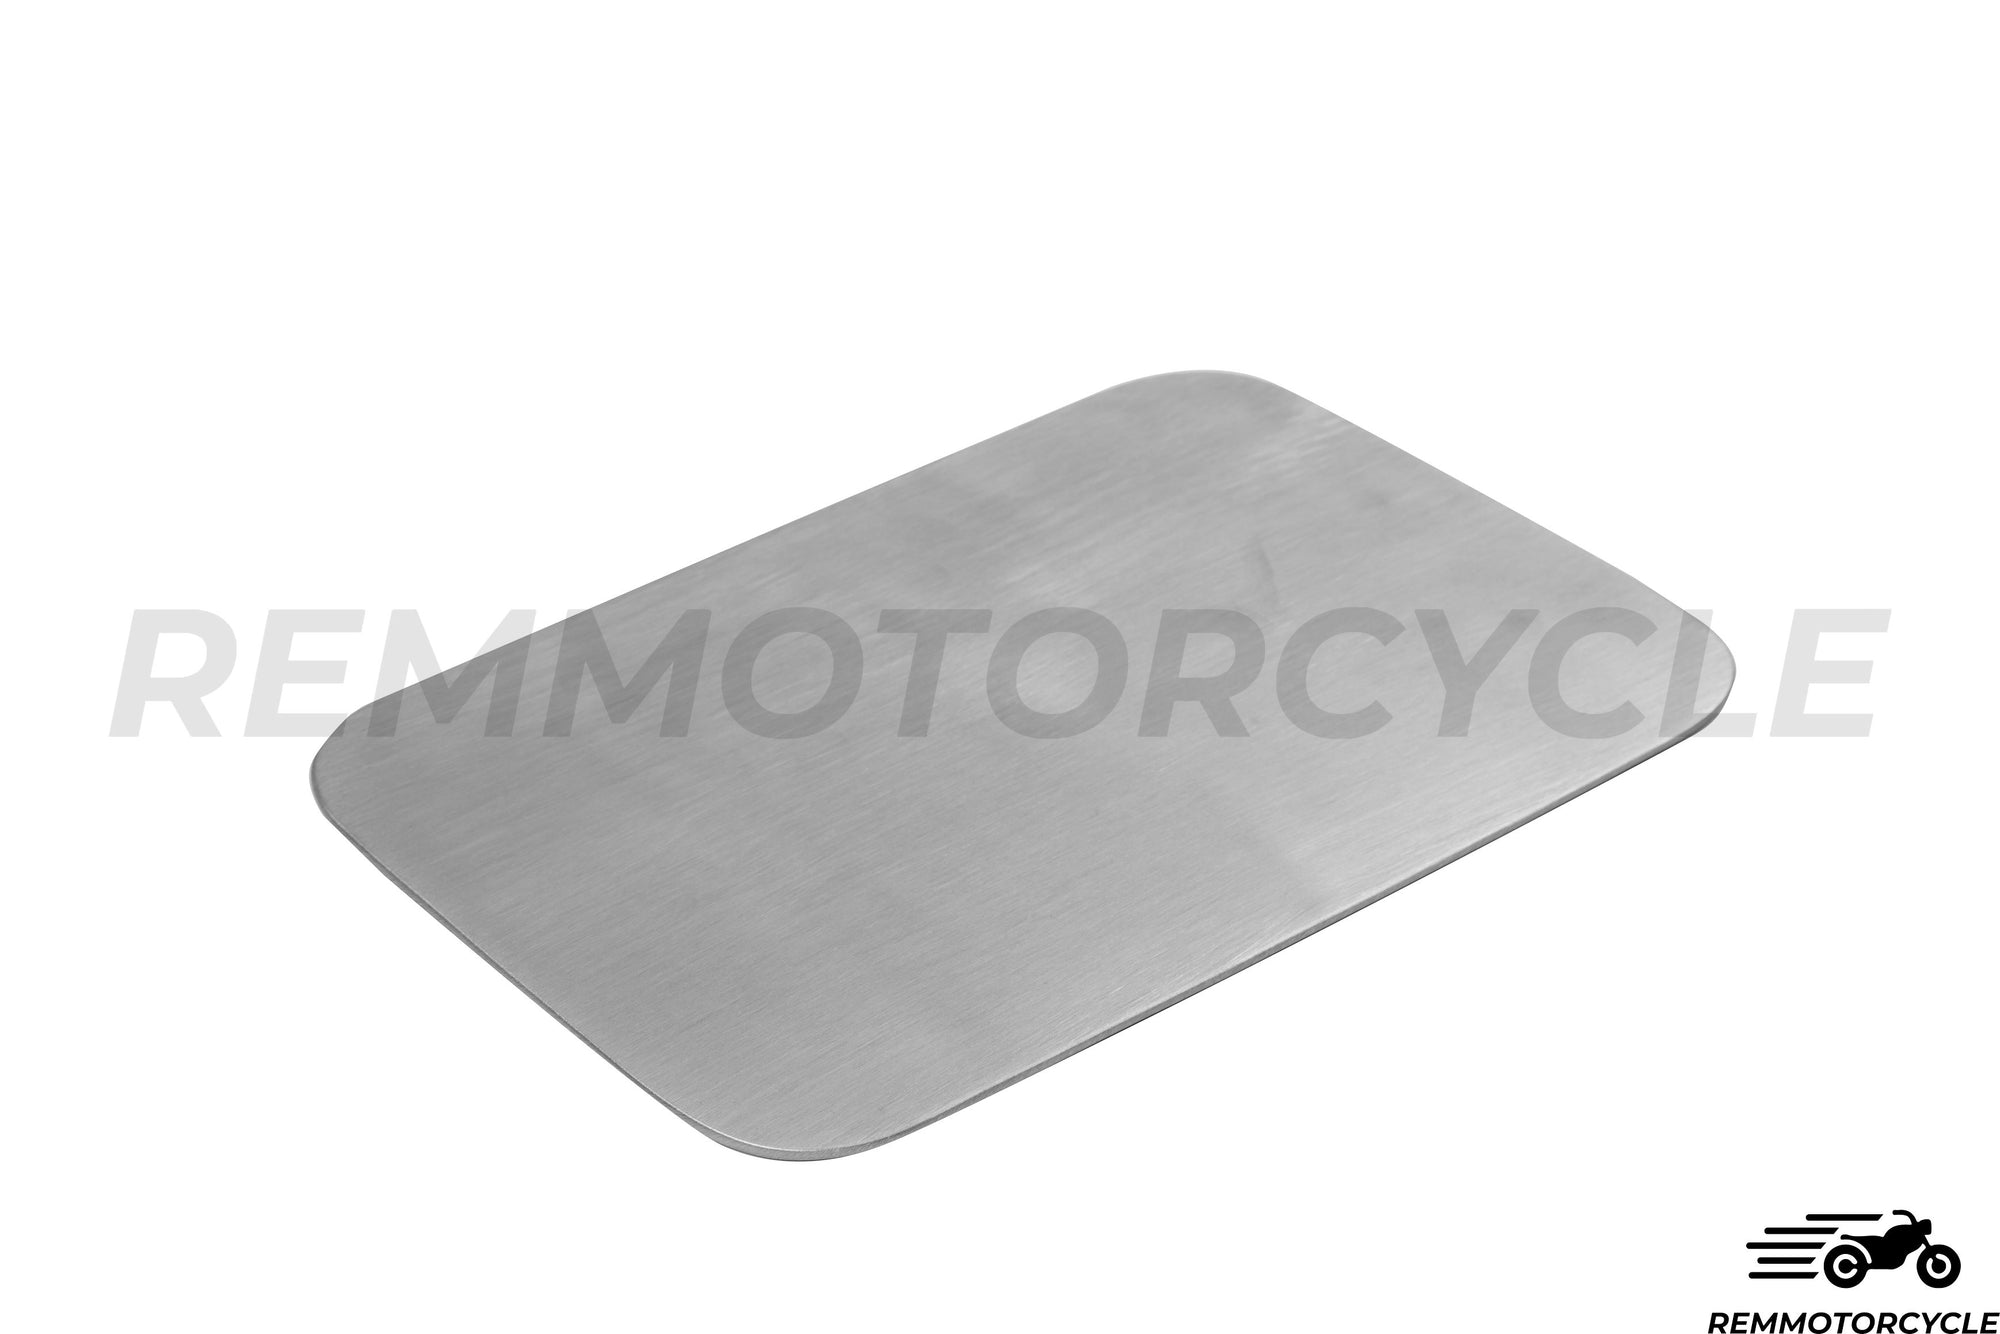 Placa lateral quadrada de alumínio